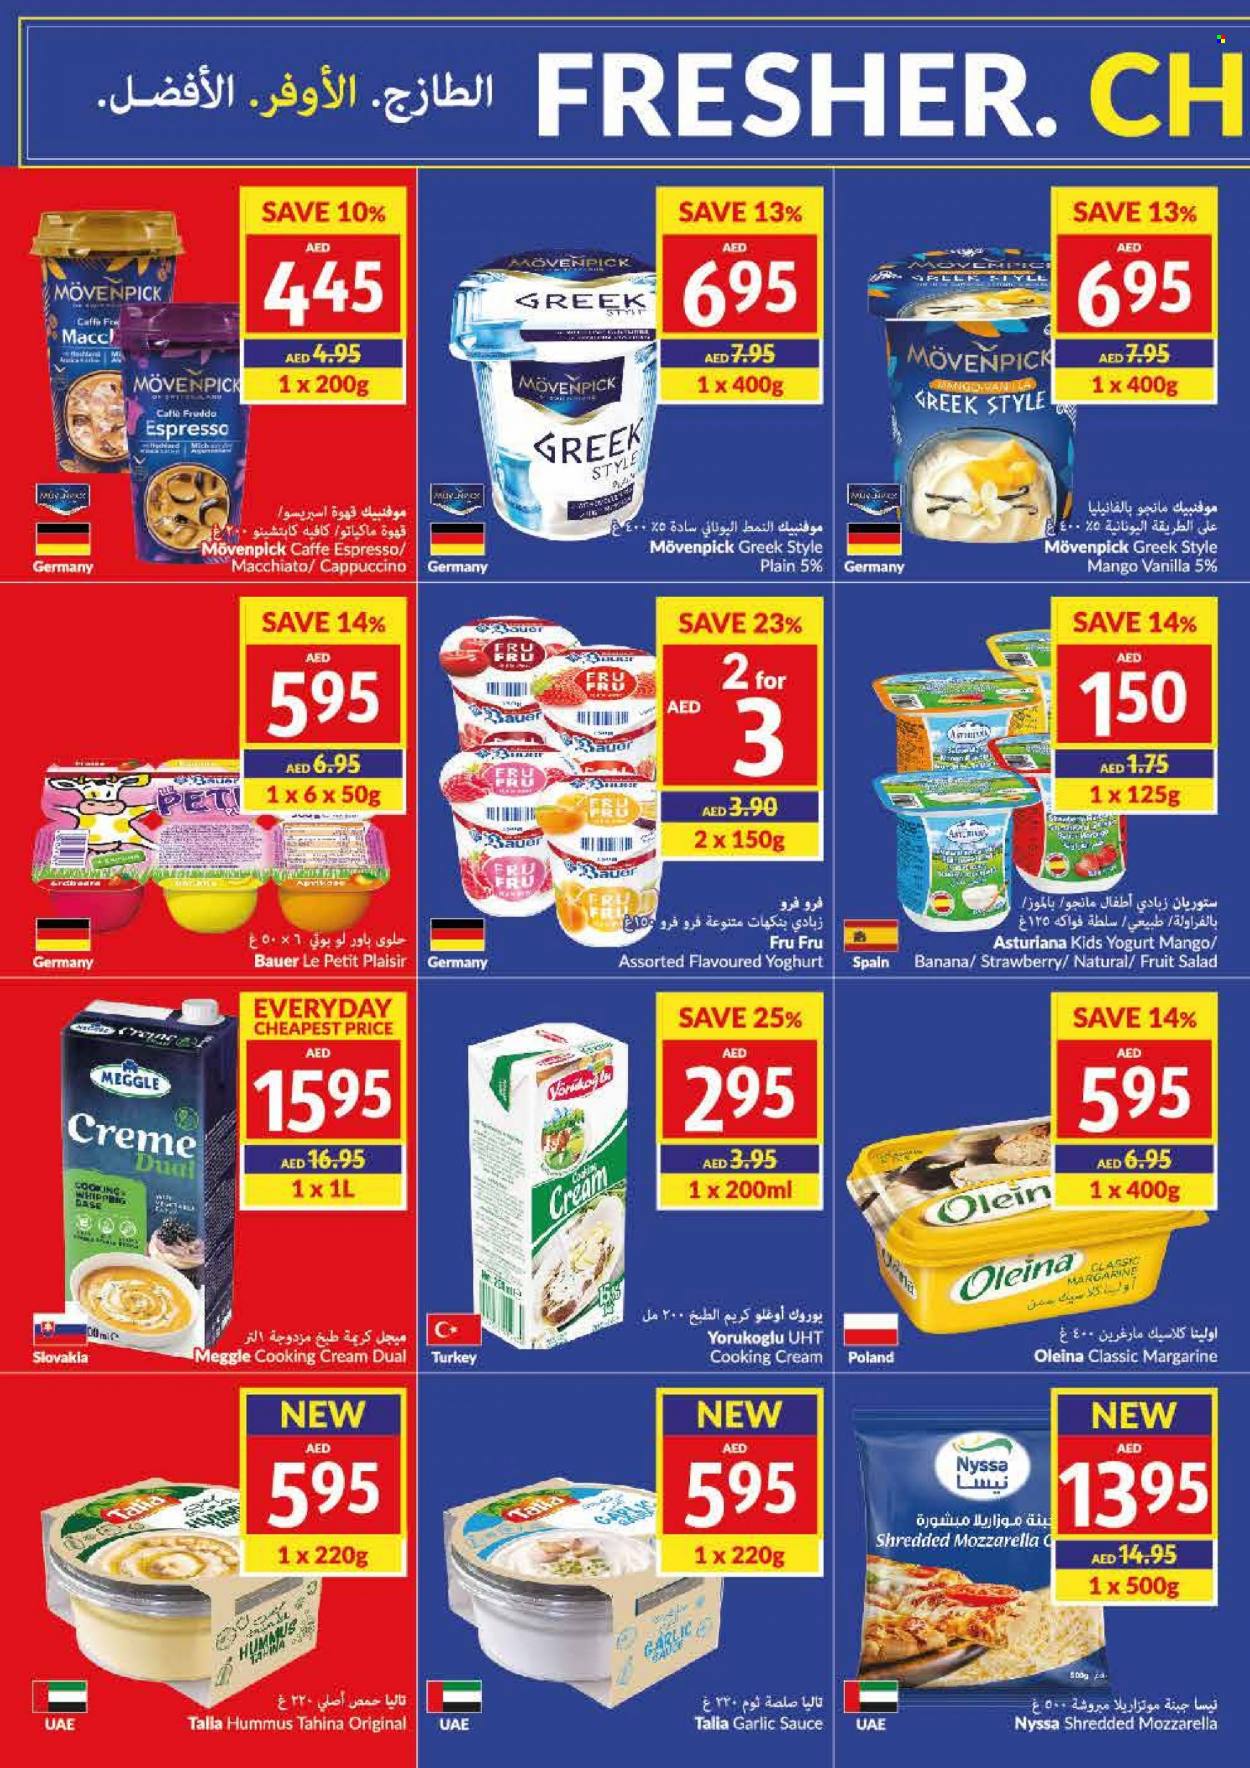 VIVA Supermarket offer - 07/06/2023 - 13/06/2023.